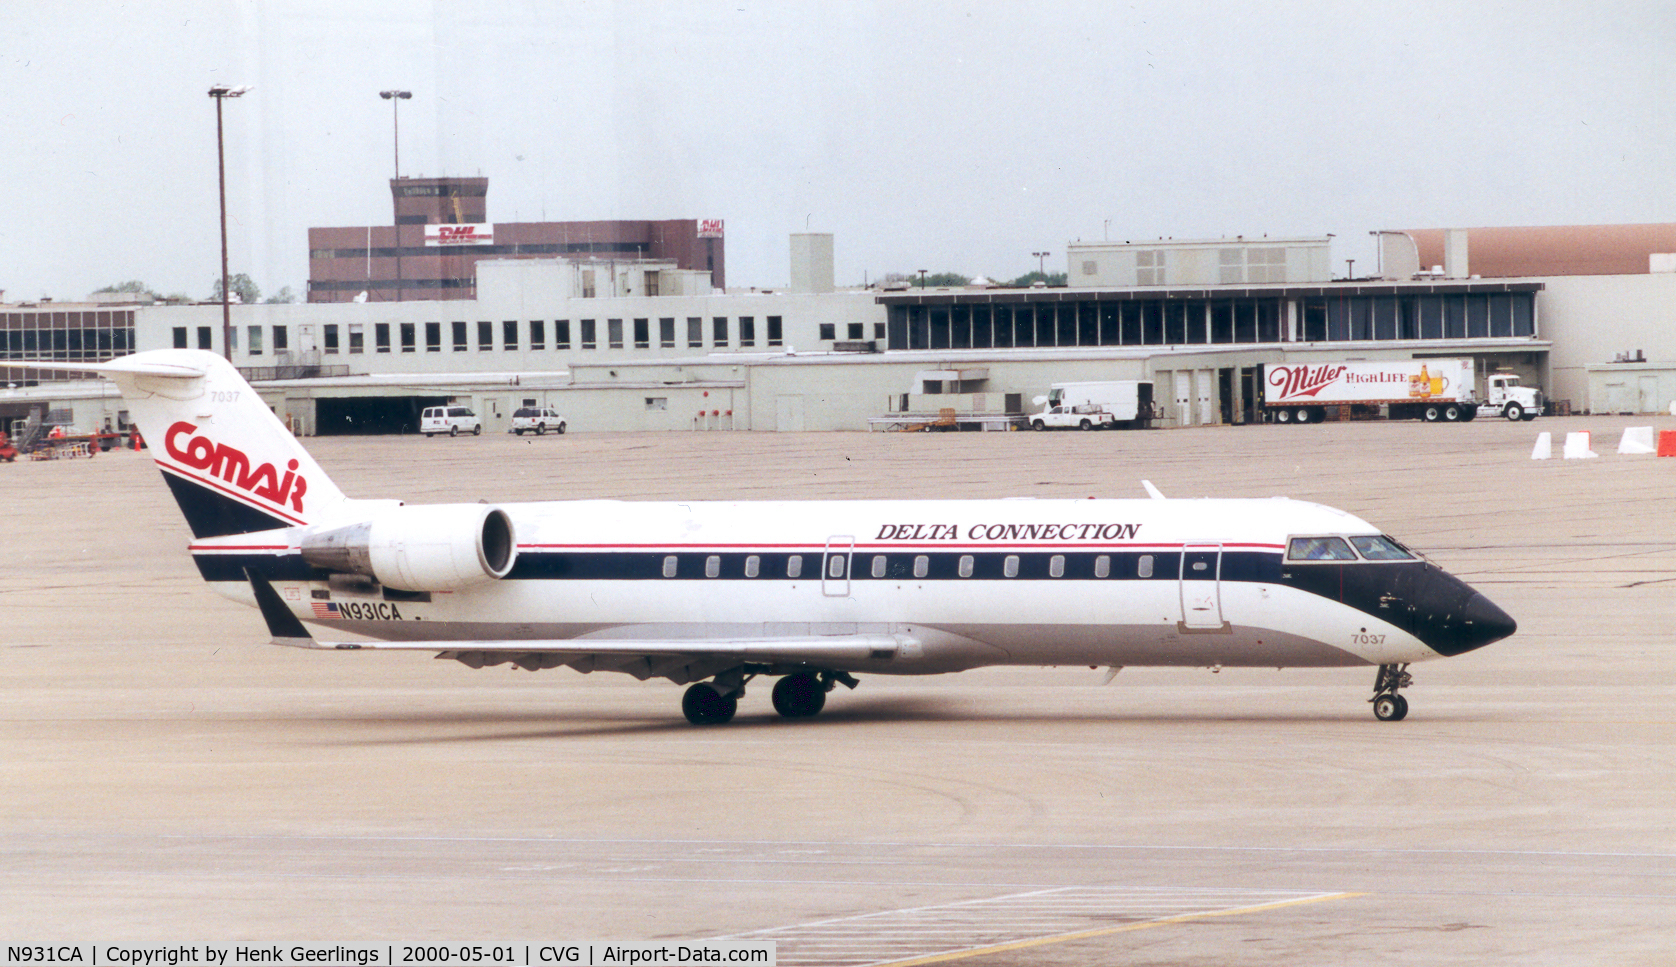 N931CA, 1994 Canadair CRJ-100ER (CL-600-2B19) C/N 7037, Comair Delta Connection